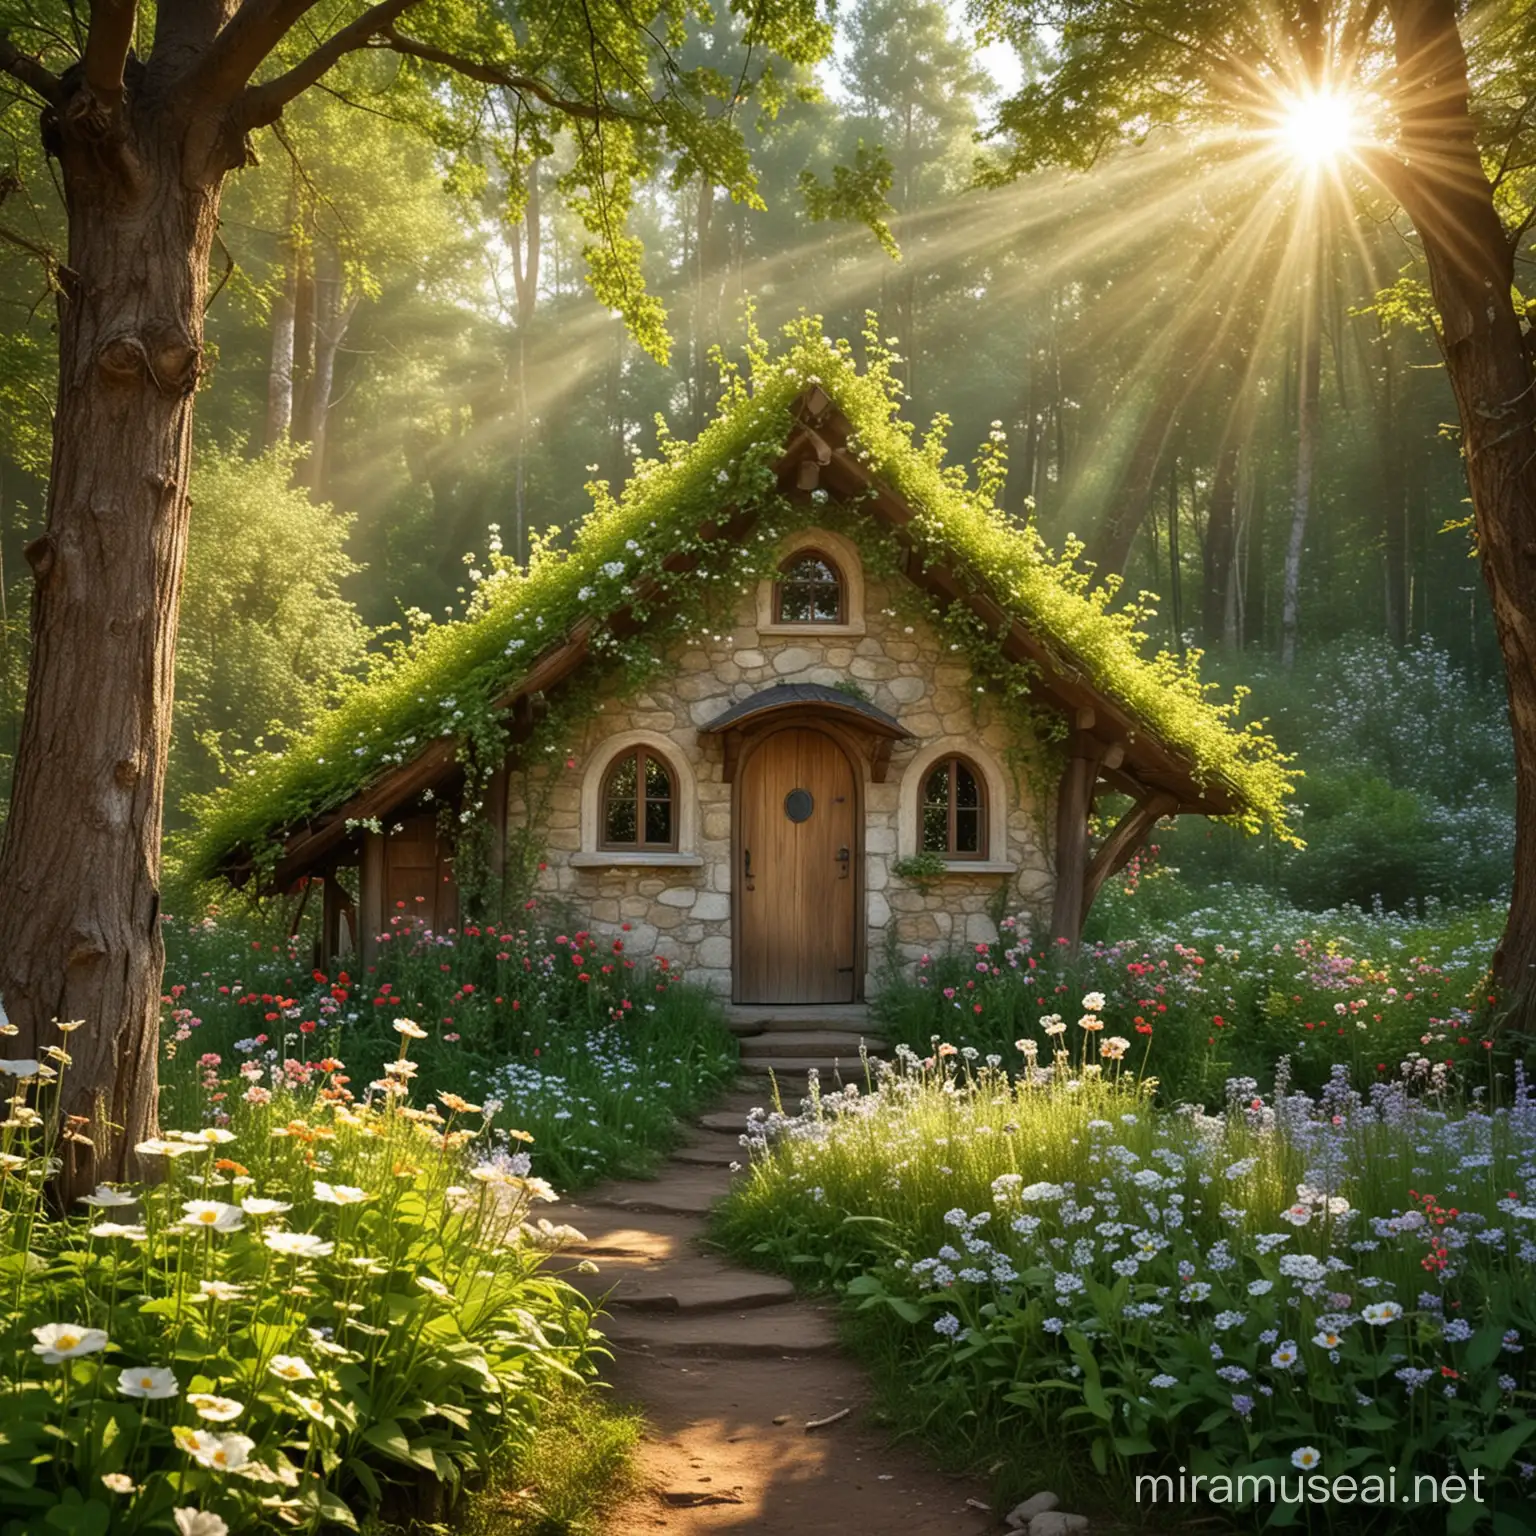 Будинок лісової феї в лісі серед ароматних квітів і в променях сонця